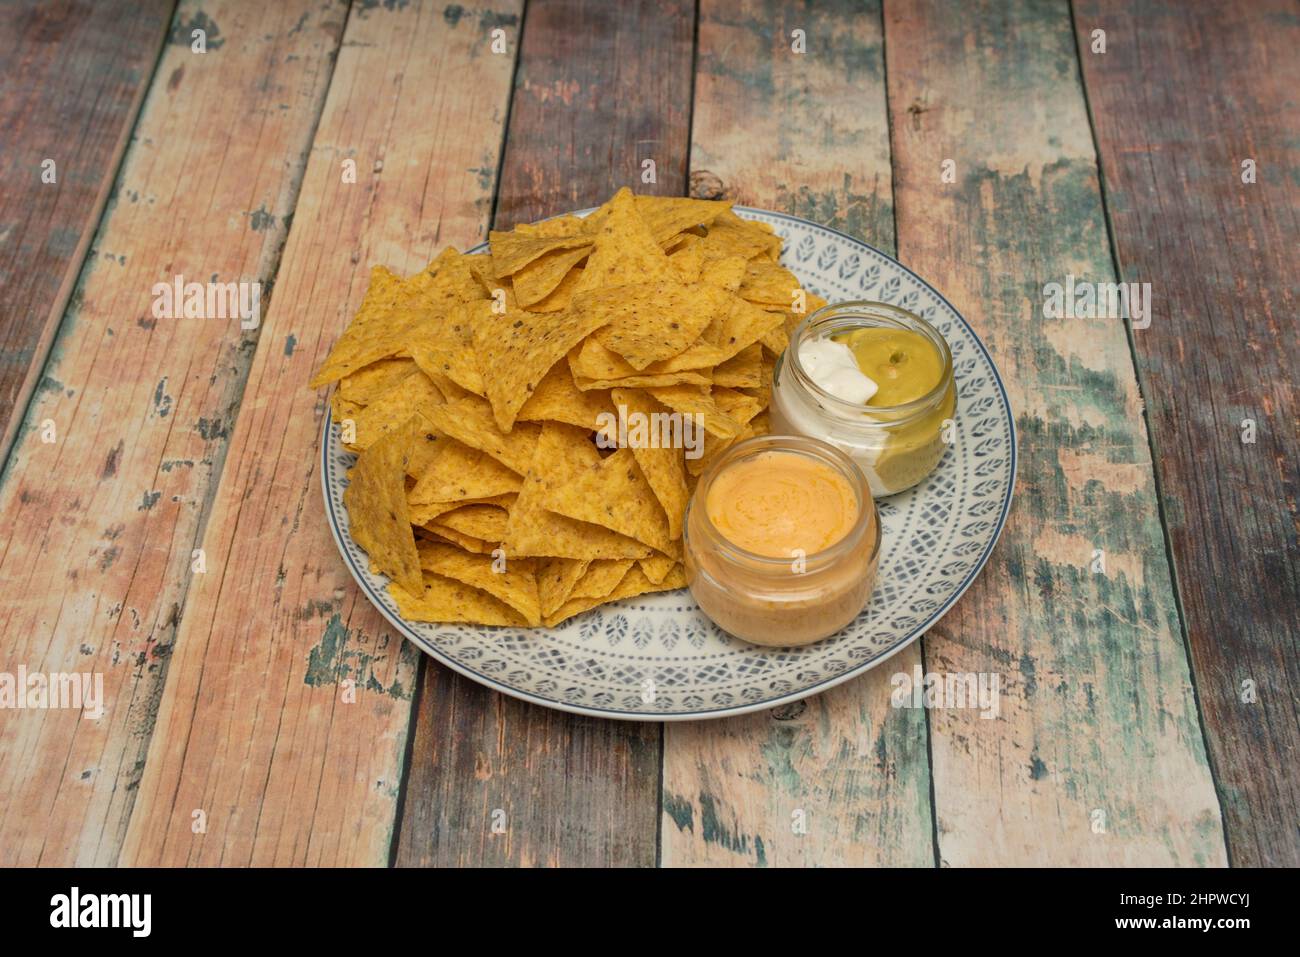 Les nachos sont un plat d'origine mexicaine, composé de morceaux de friture de tortilla de maïs couverts d'un fromage spécial appelé 'queso para nachos' Banque D'Images